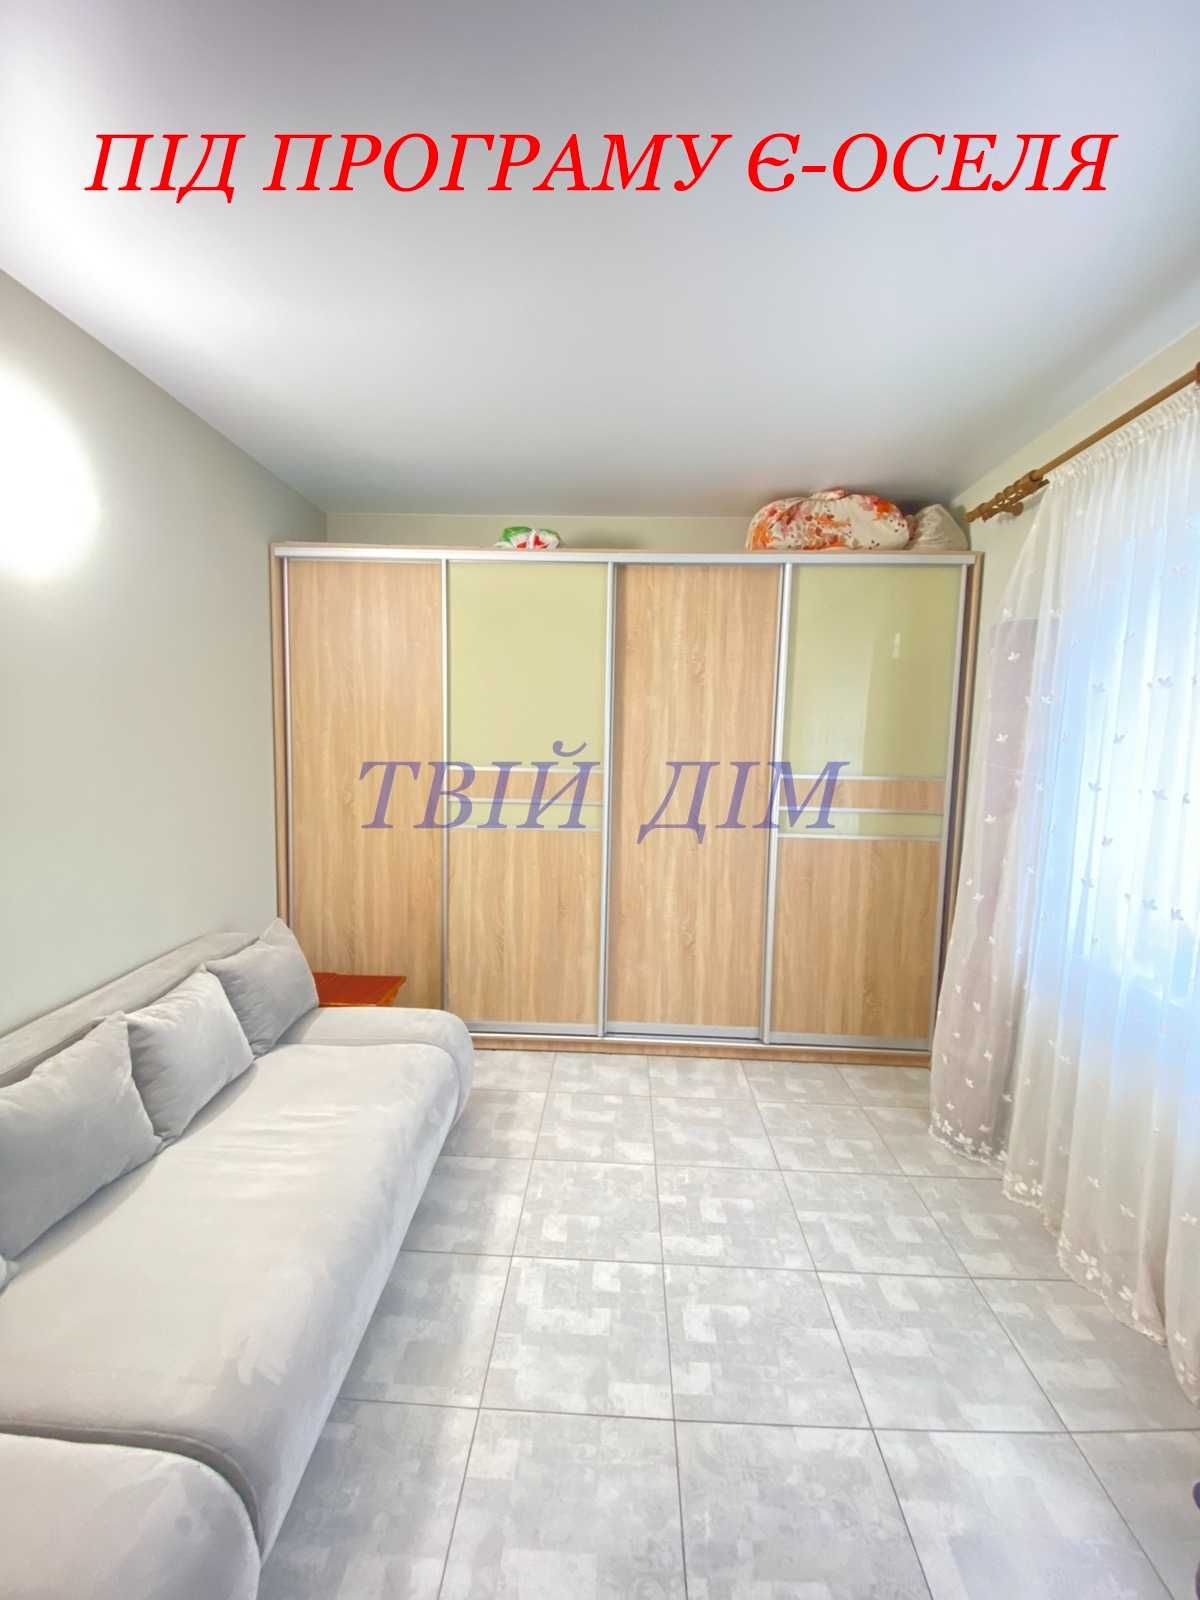 Продам будинок 85 м.кв. з гаражем на 10 сотках м.Бориспіль